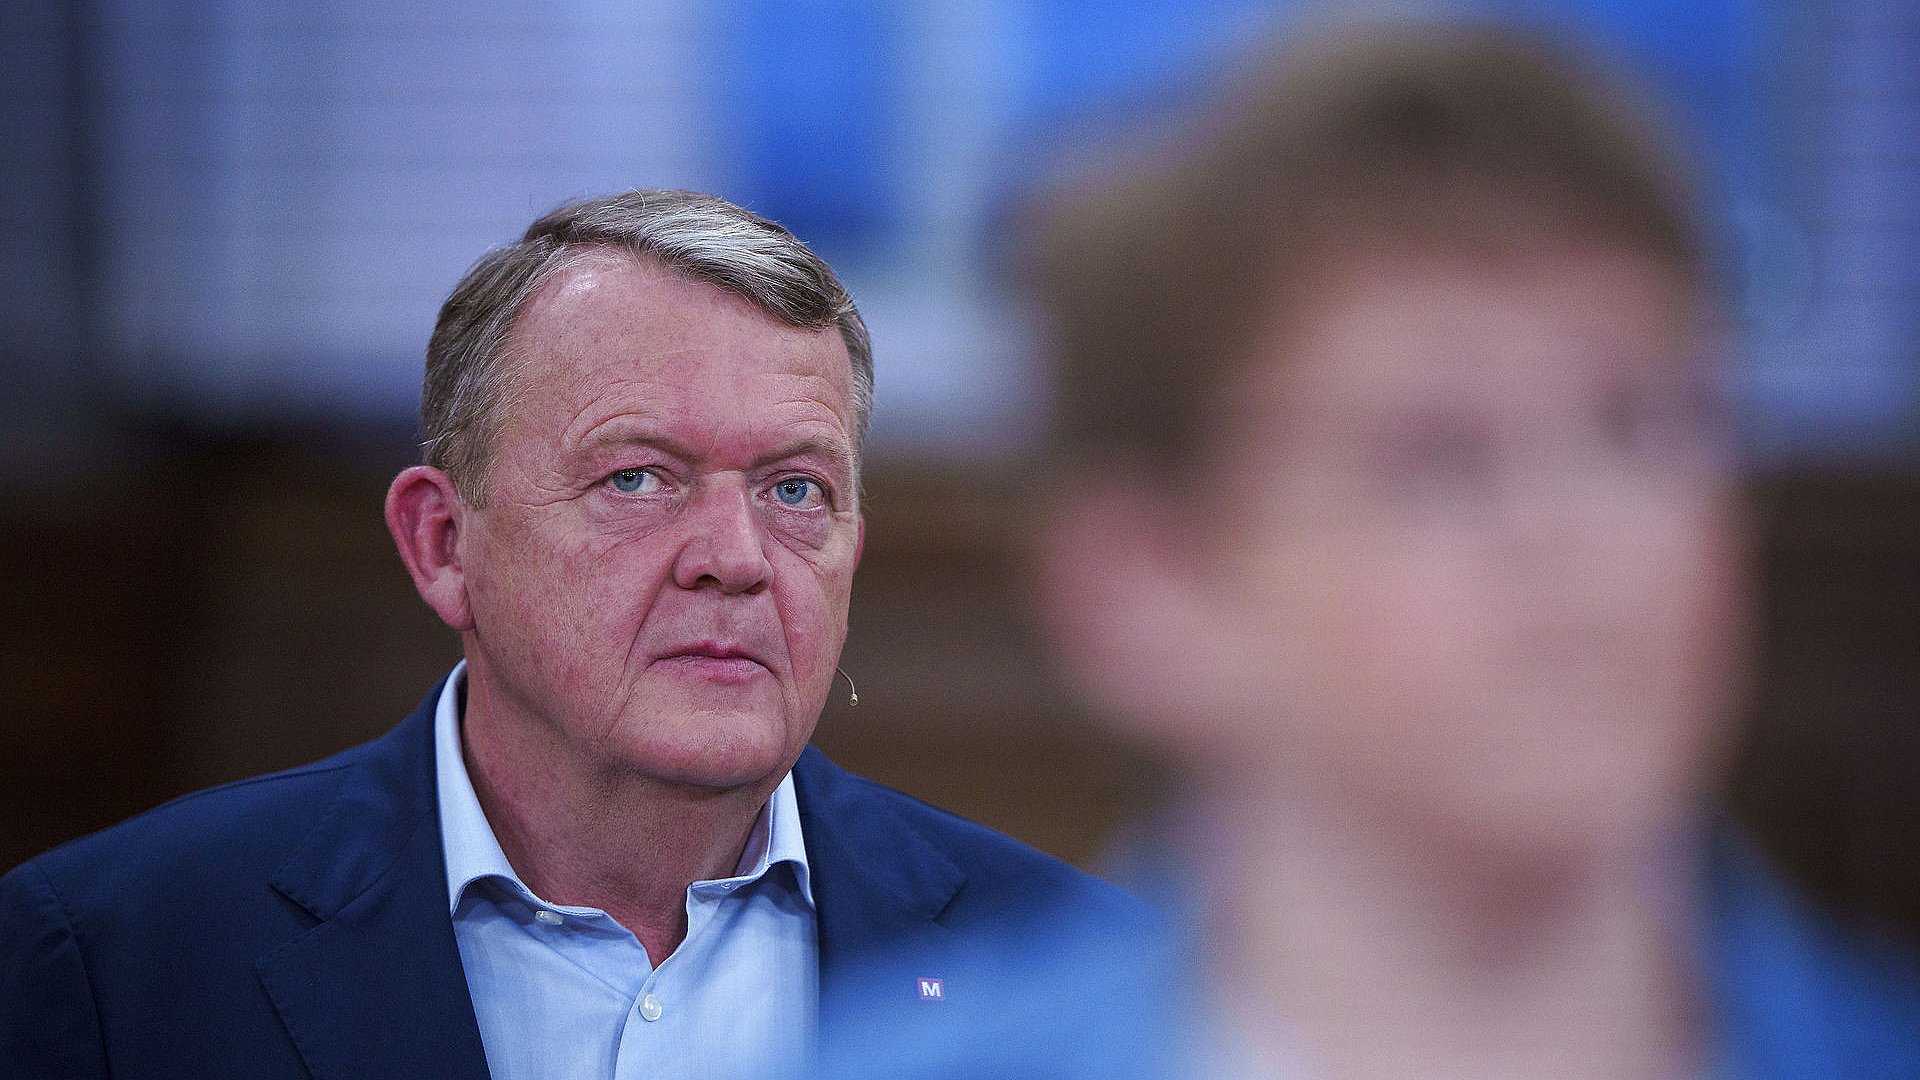 Lars Løkkes parti får i målingen 8,5 procent af stemmerne og 15 mandater. Foto: Bo Amstrup/Ritzau Scanpix.